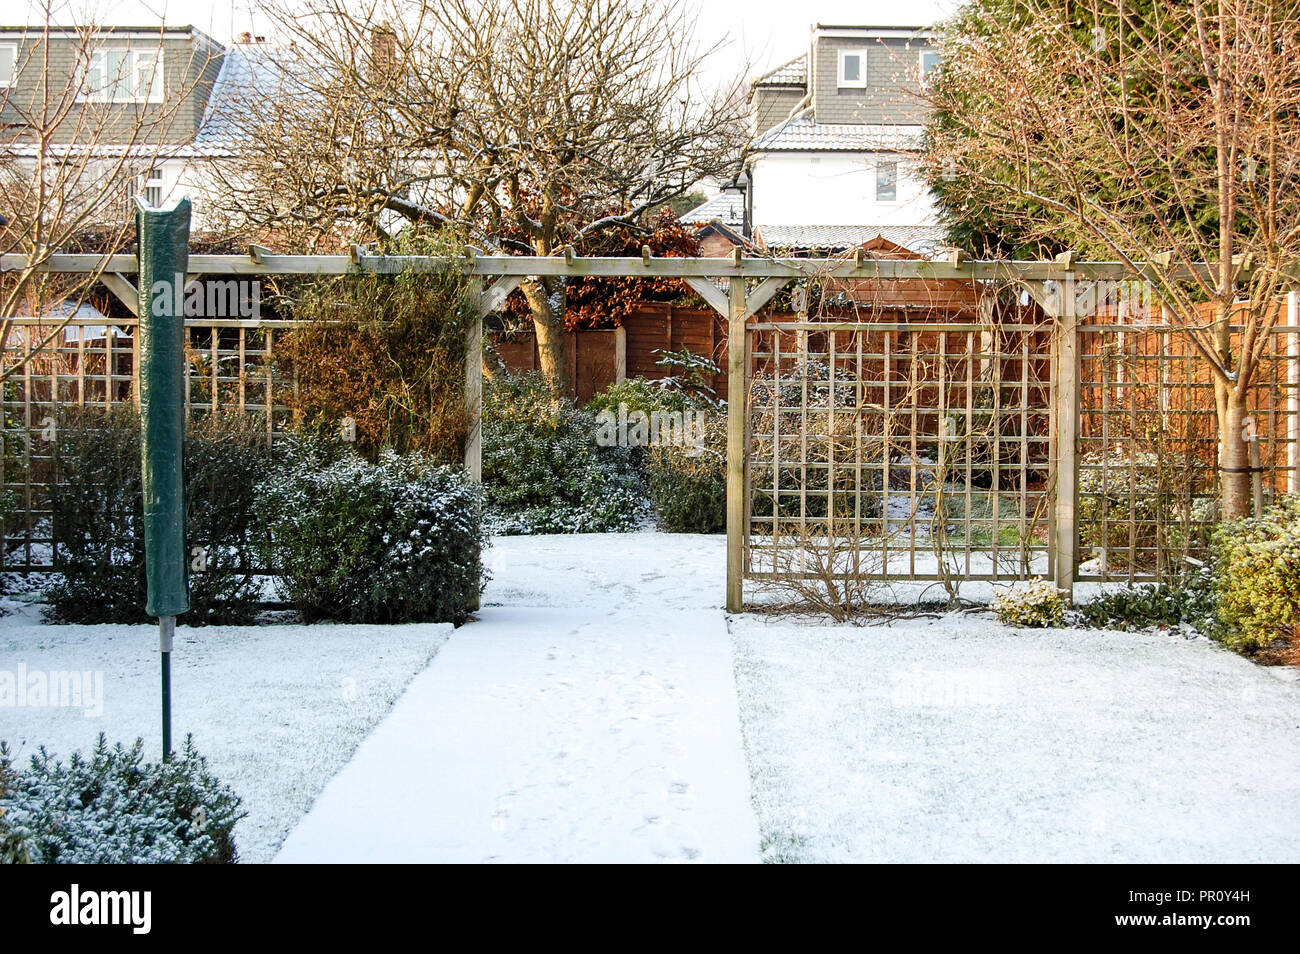 Snowy Garden scene Stock Photo